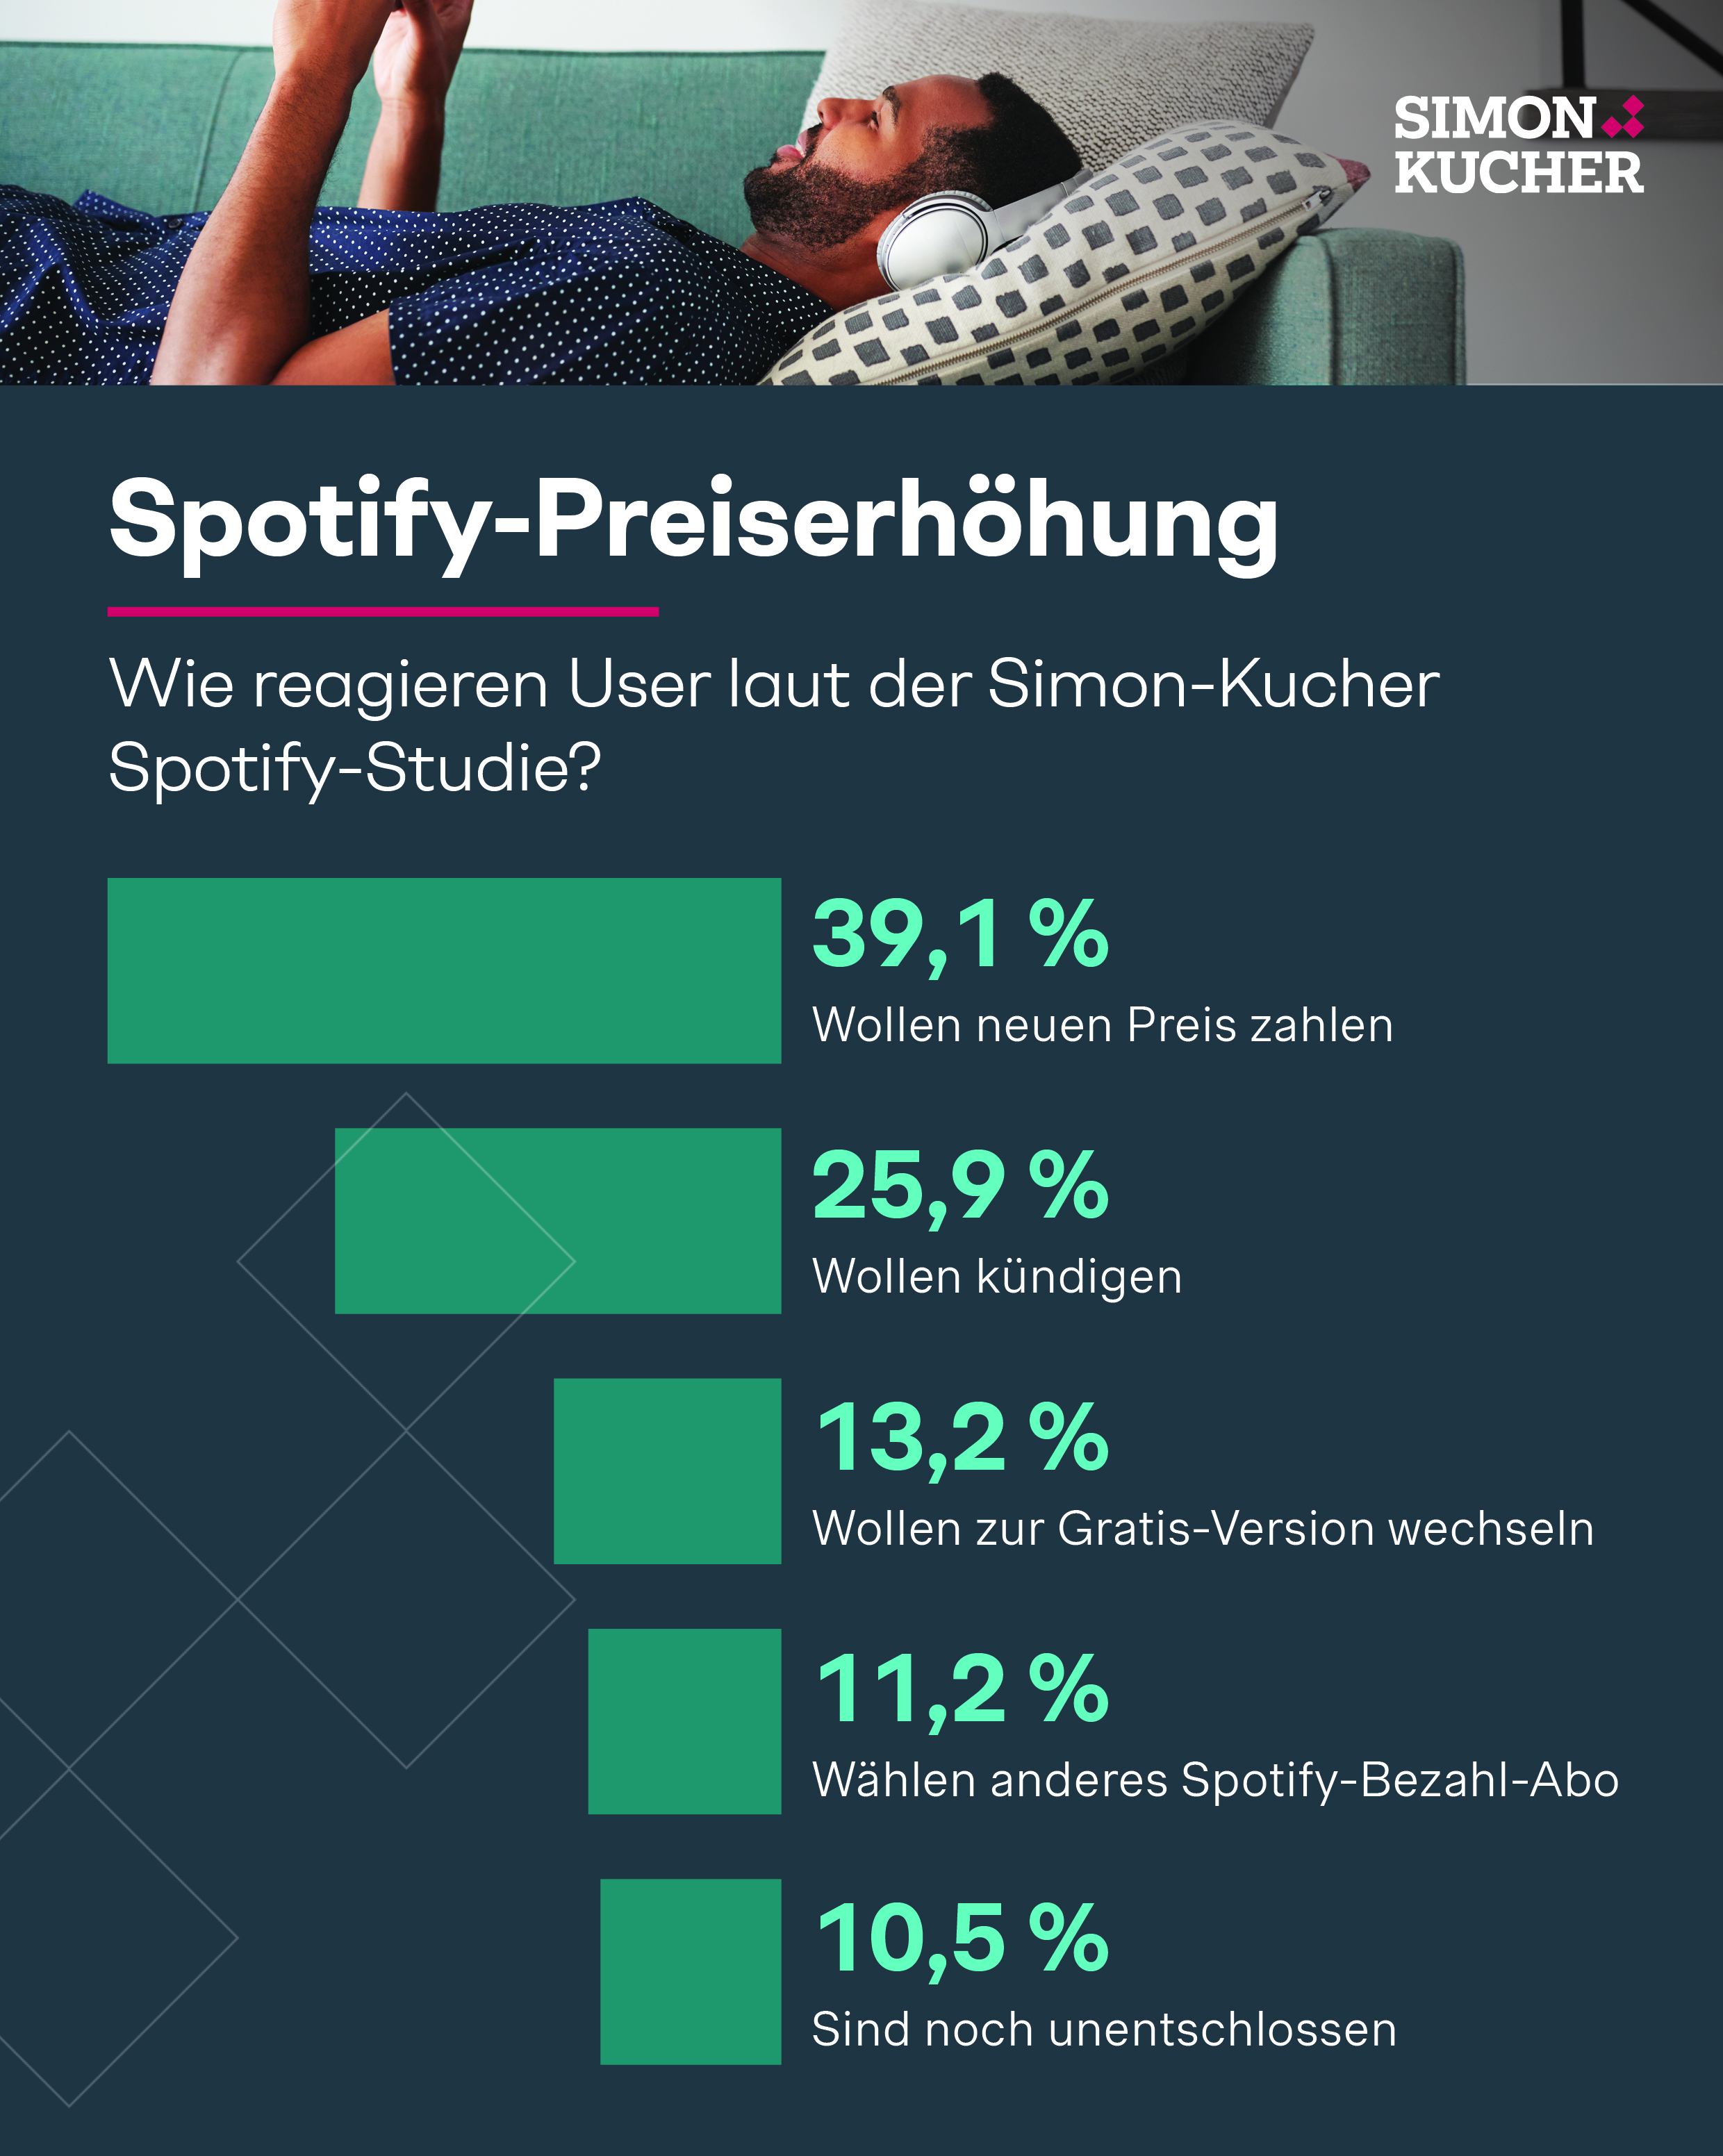 SImon-Kucher Spotify-Studie: Wie reagieren User auf die Preiserhöhung?